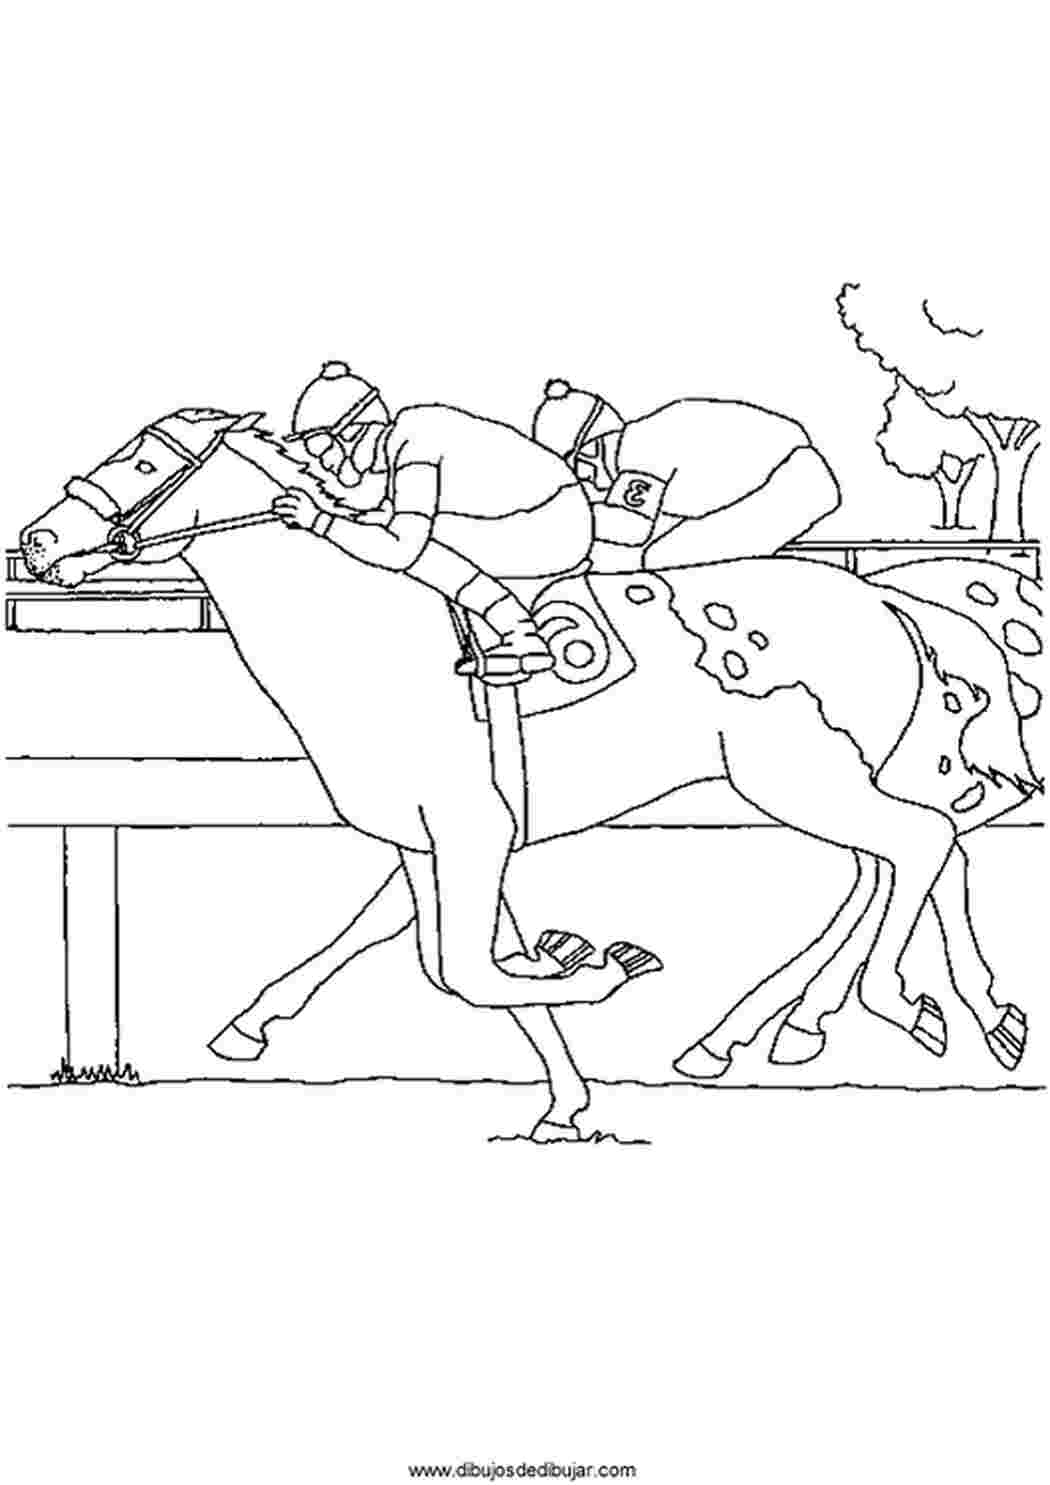 Раскраска соревнования на лошадях